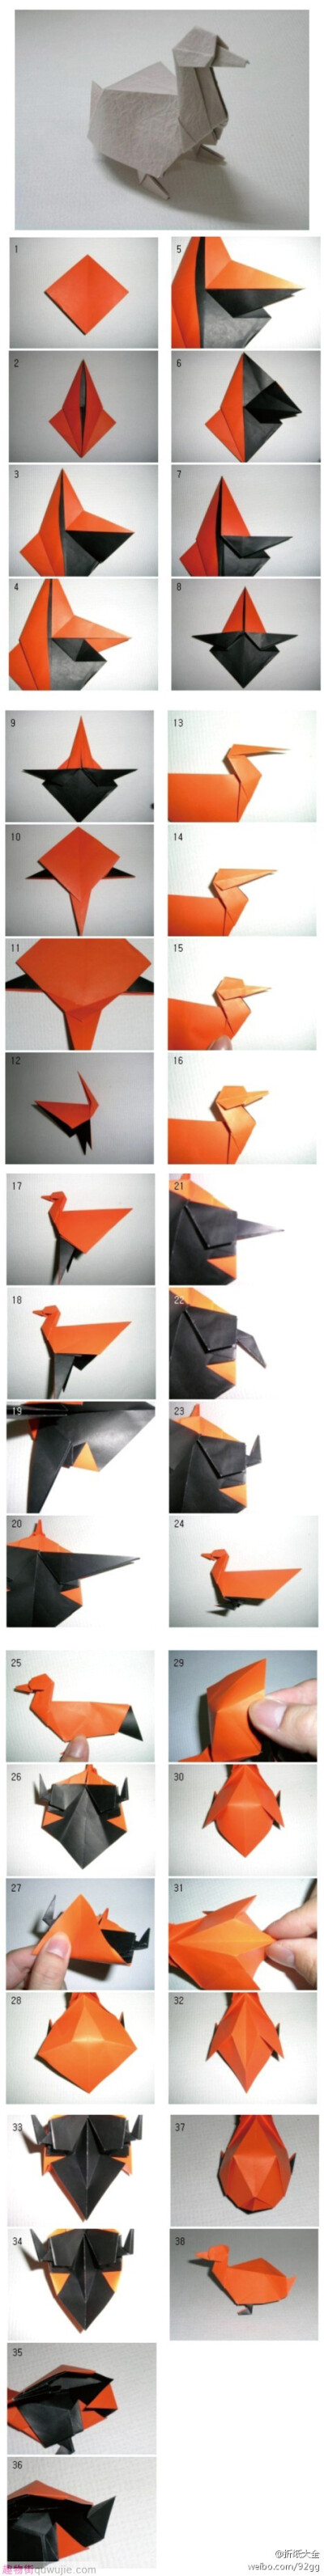 折纸鸭子